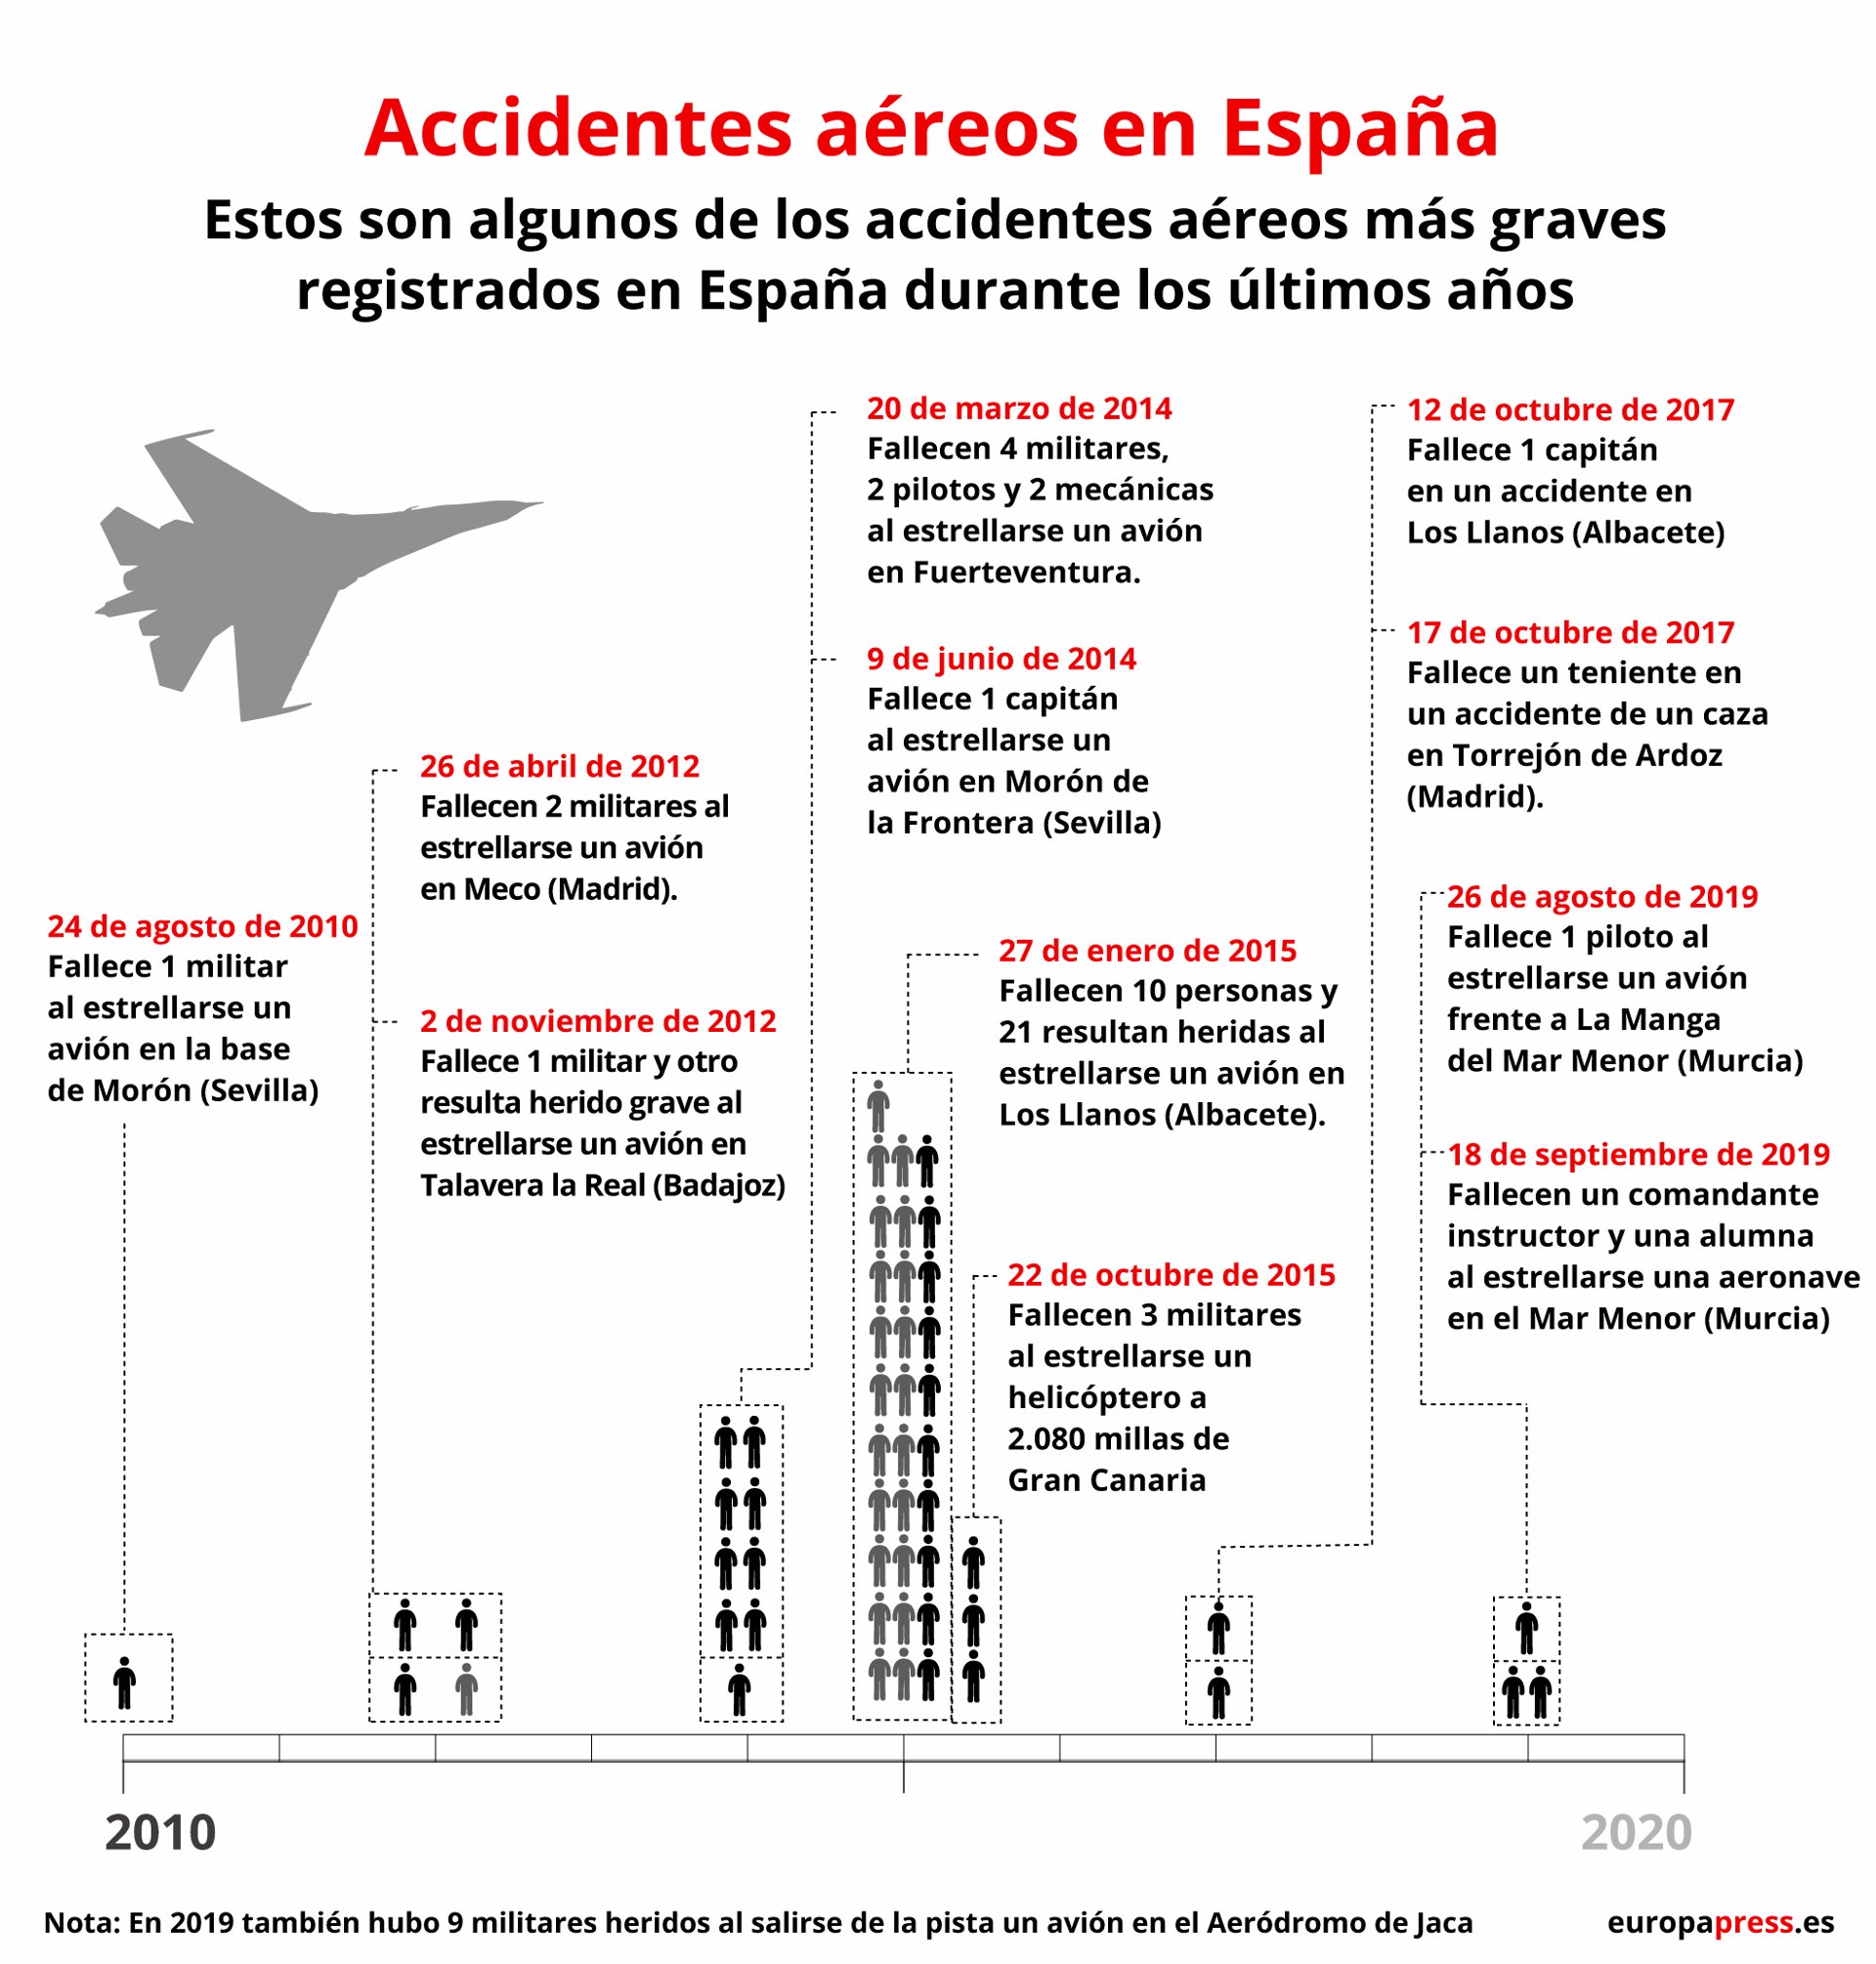 Infografía con accidentes aéreos en España